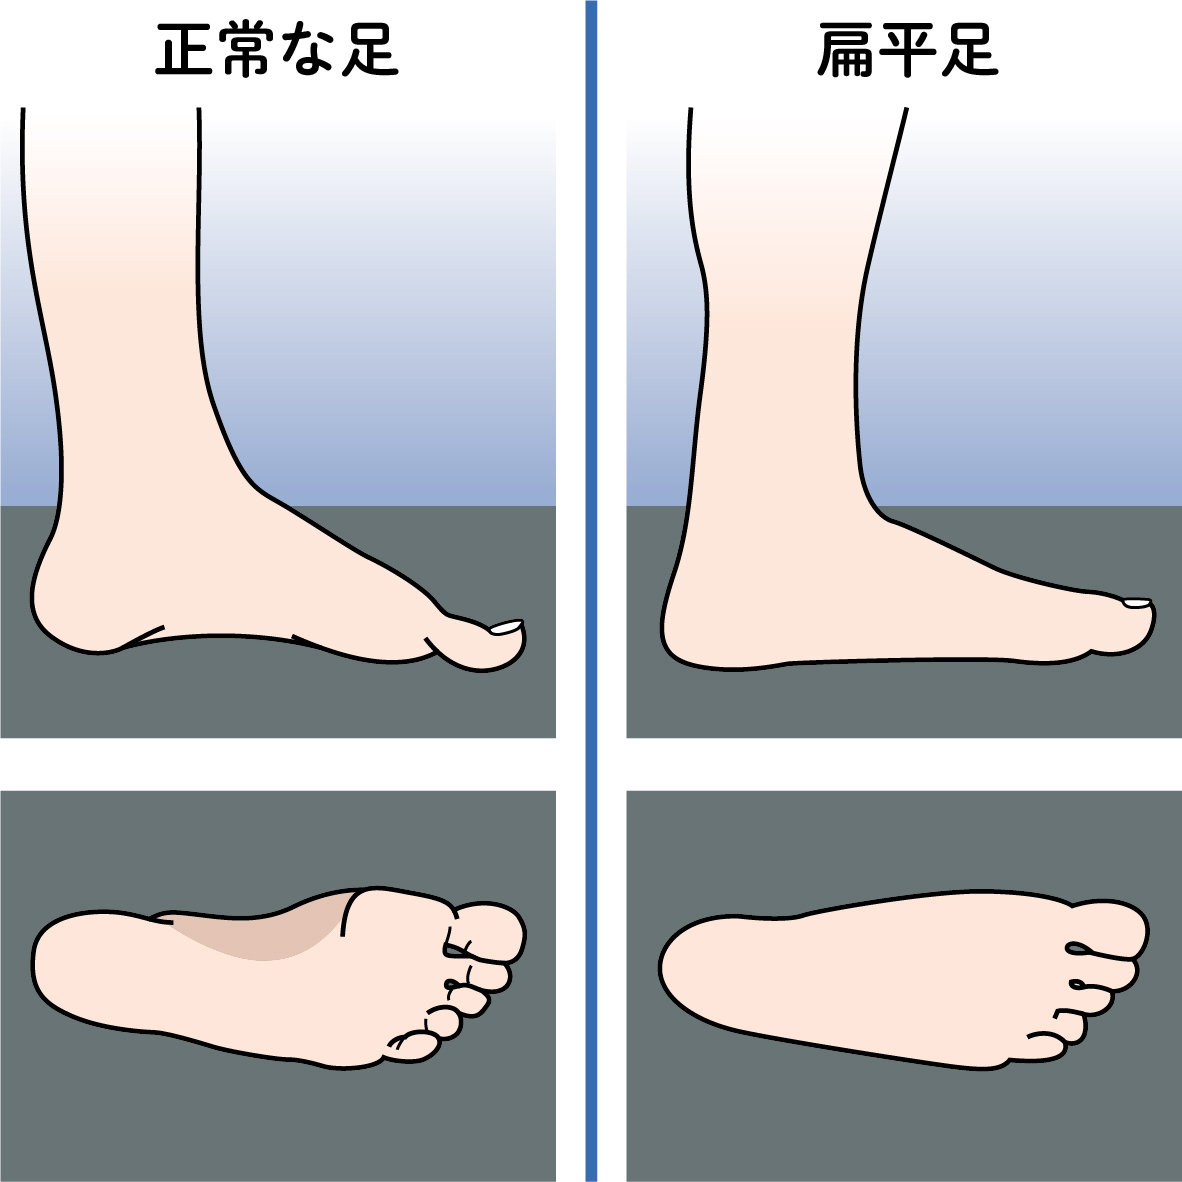 歩行障害のリスクになる扁平足（右）と正常な足